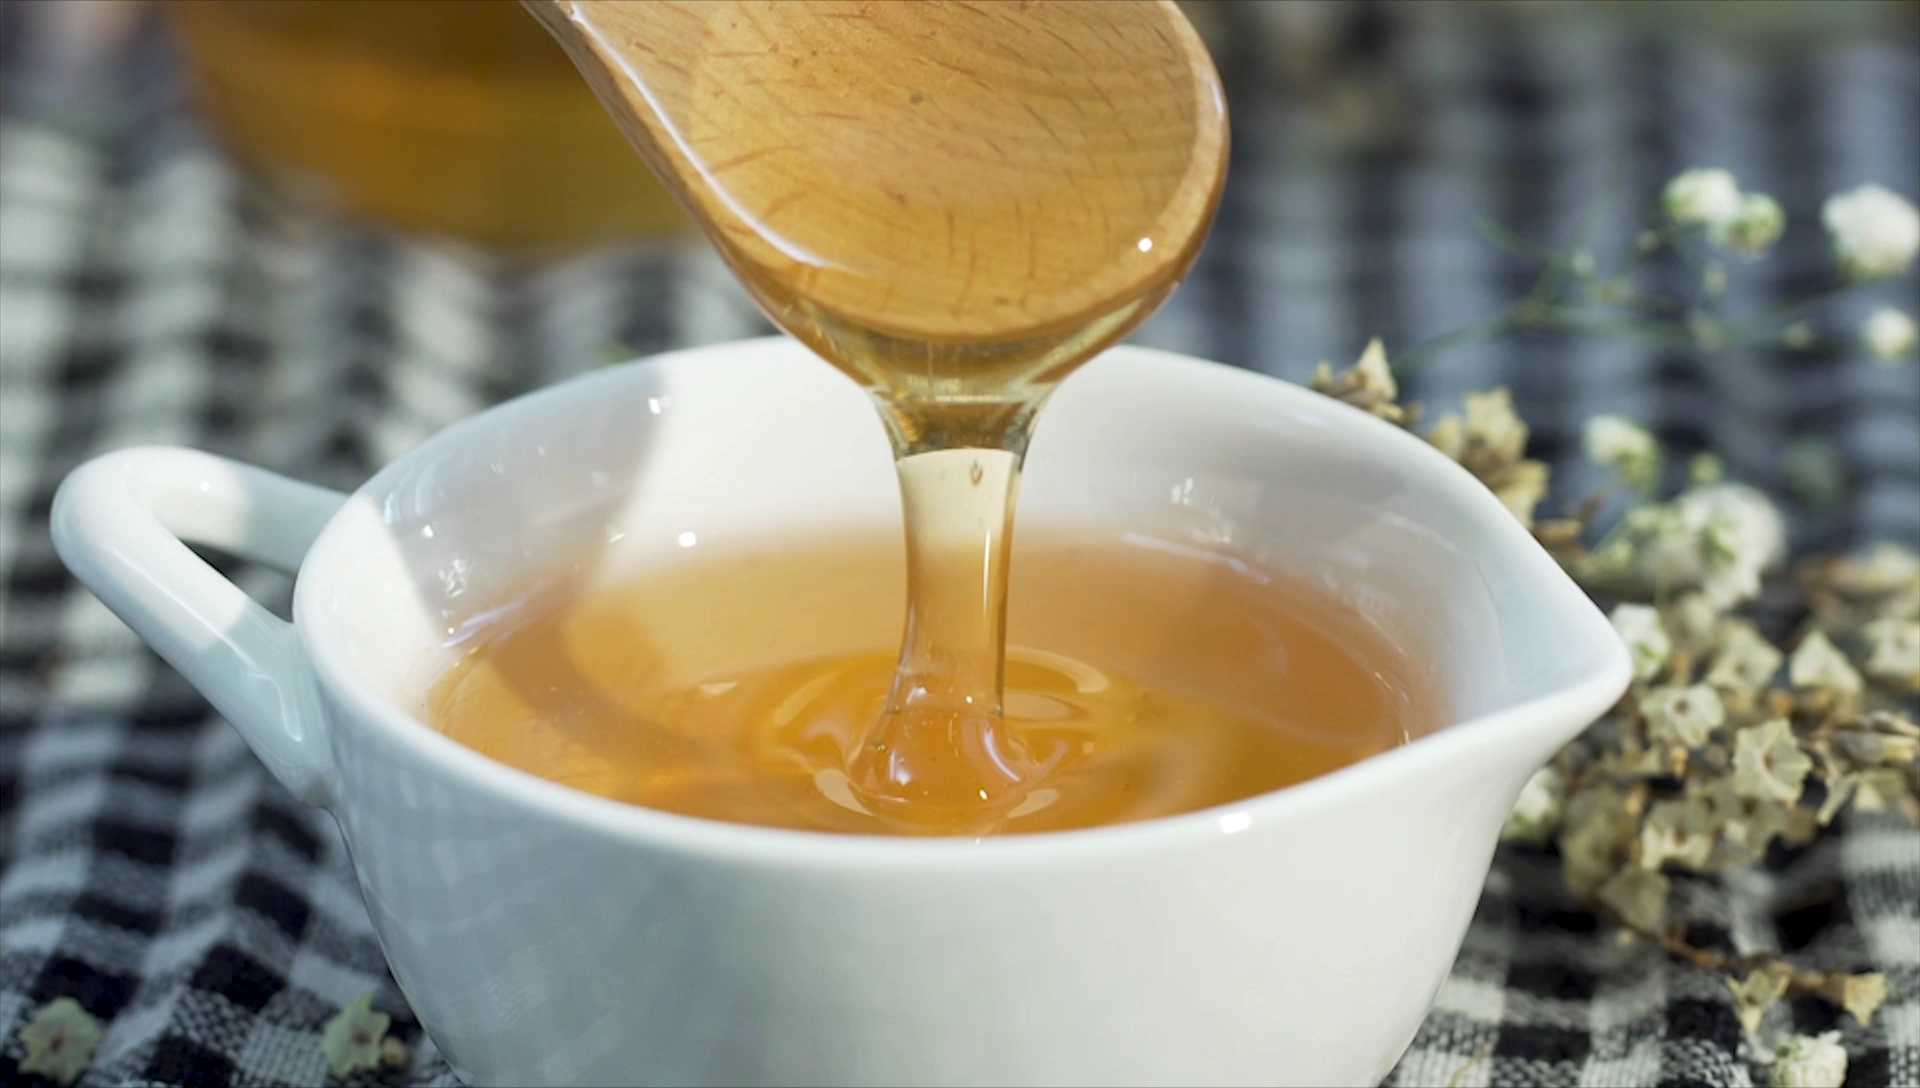 3 Chai Mật ong nguyên chất hoa rừng tây bắc Phúc Khang (720g)  - Hàng Chính Hãng - Mật ong sạch đạt chuẩn xuất khẩu 